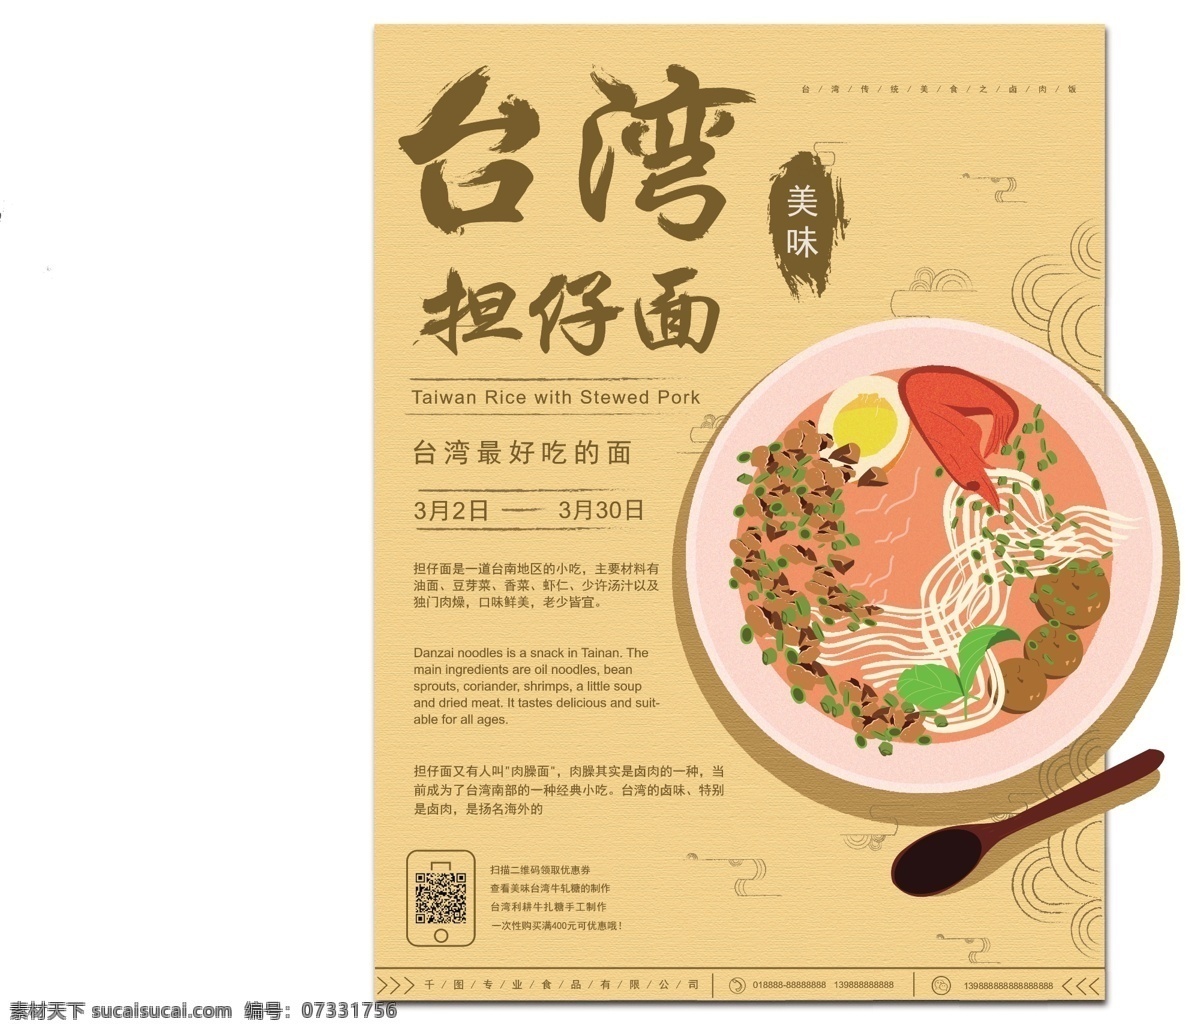 原创 手绘 古风 简约 台湾 美食 担 仔 海报 担仔面 宣传